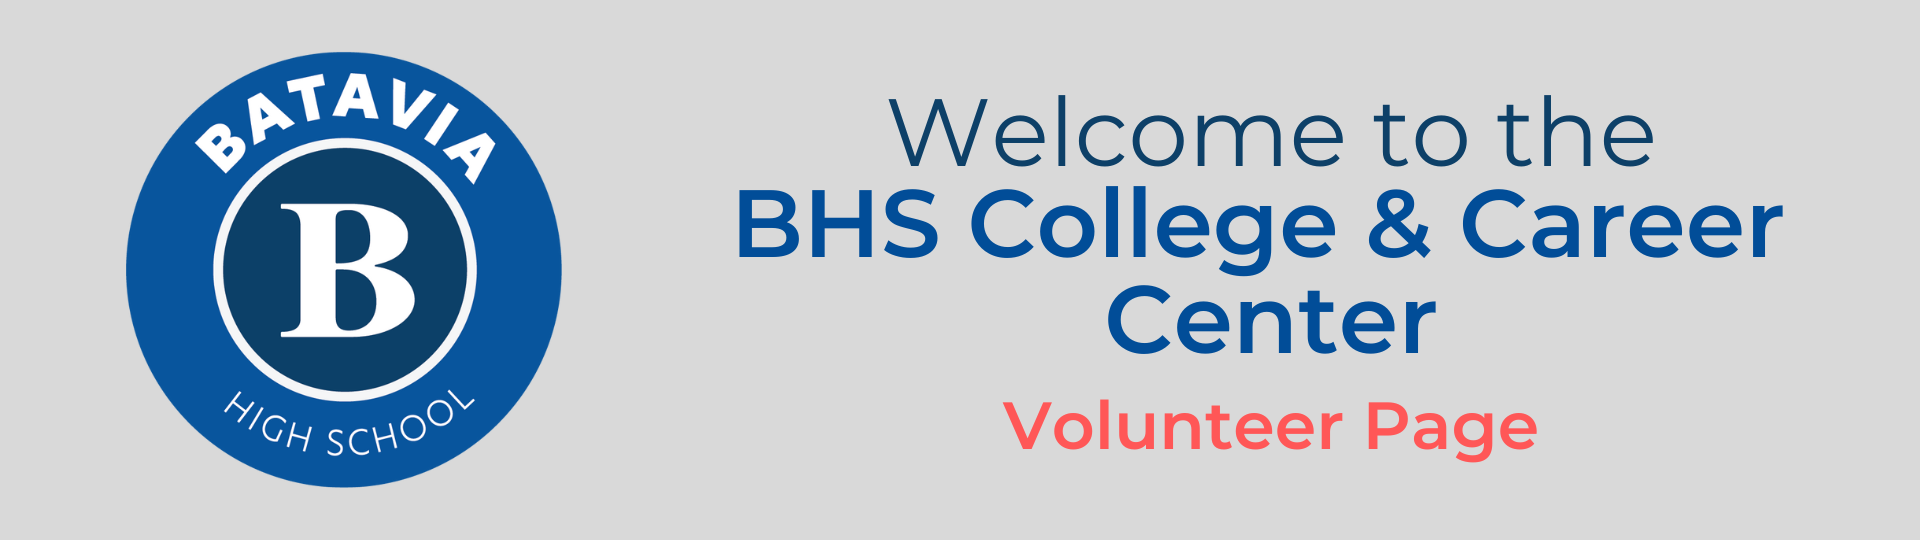 BHS College & Career Center - VOLUNTEERING OPPORTUNITIES